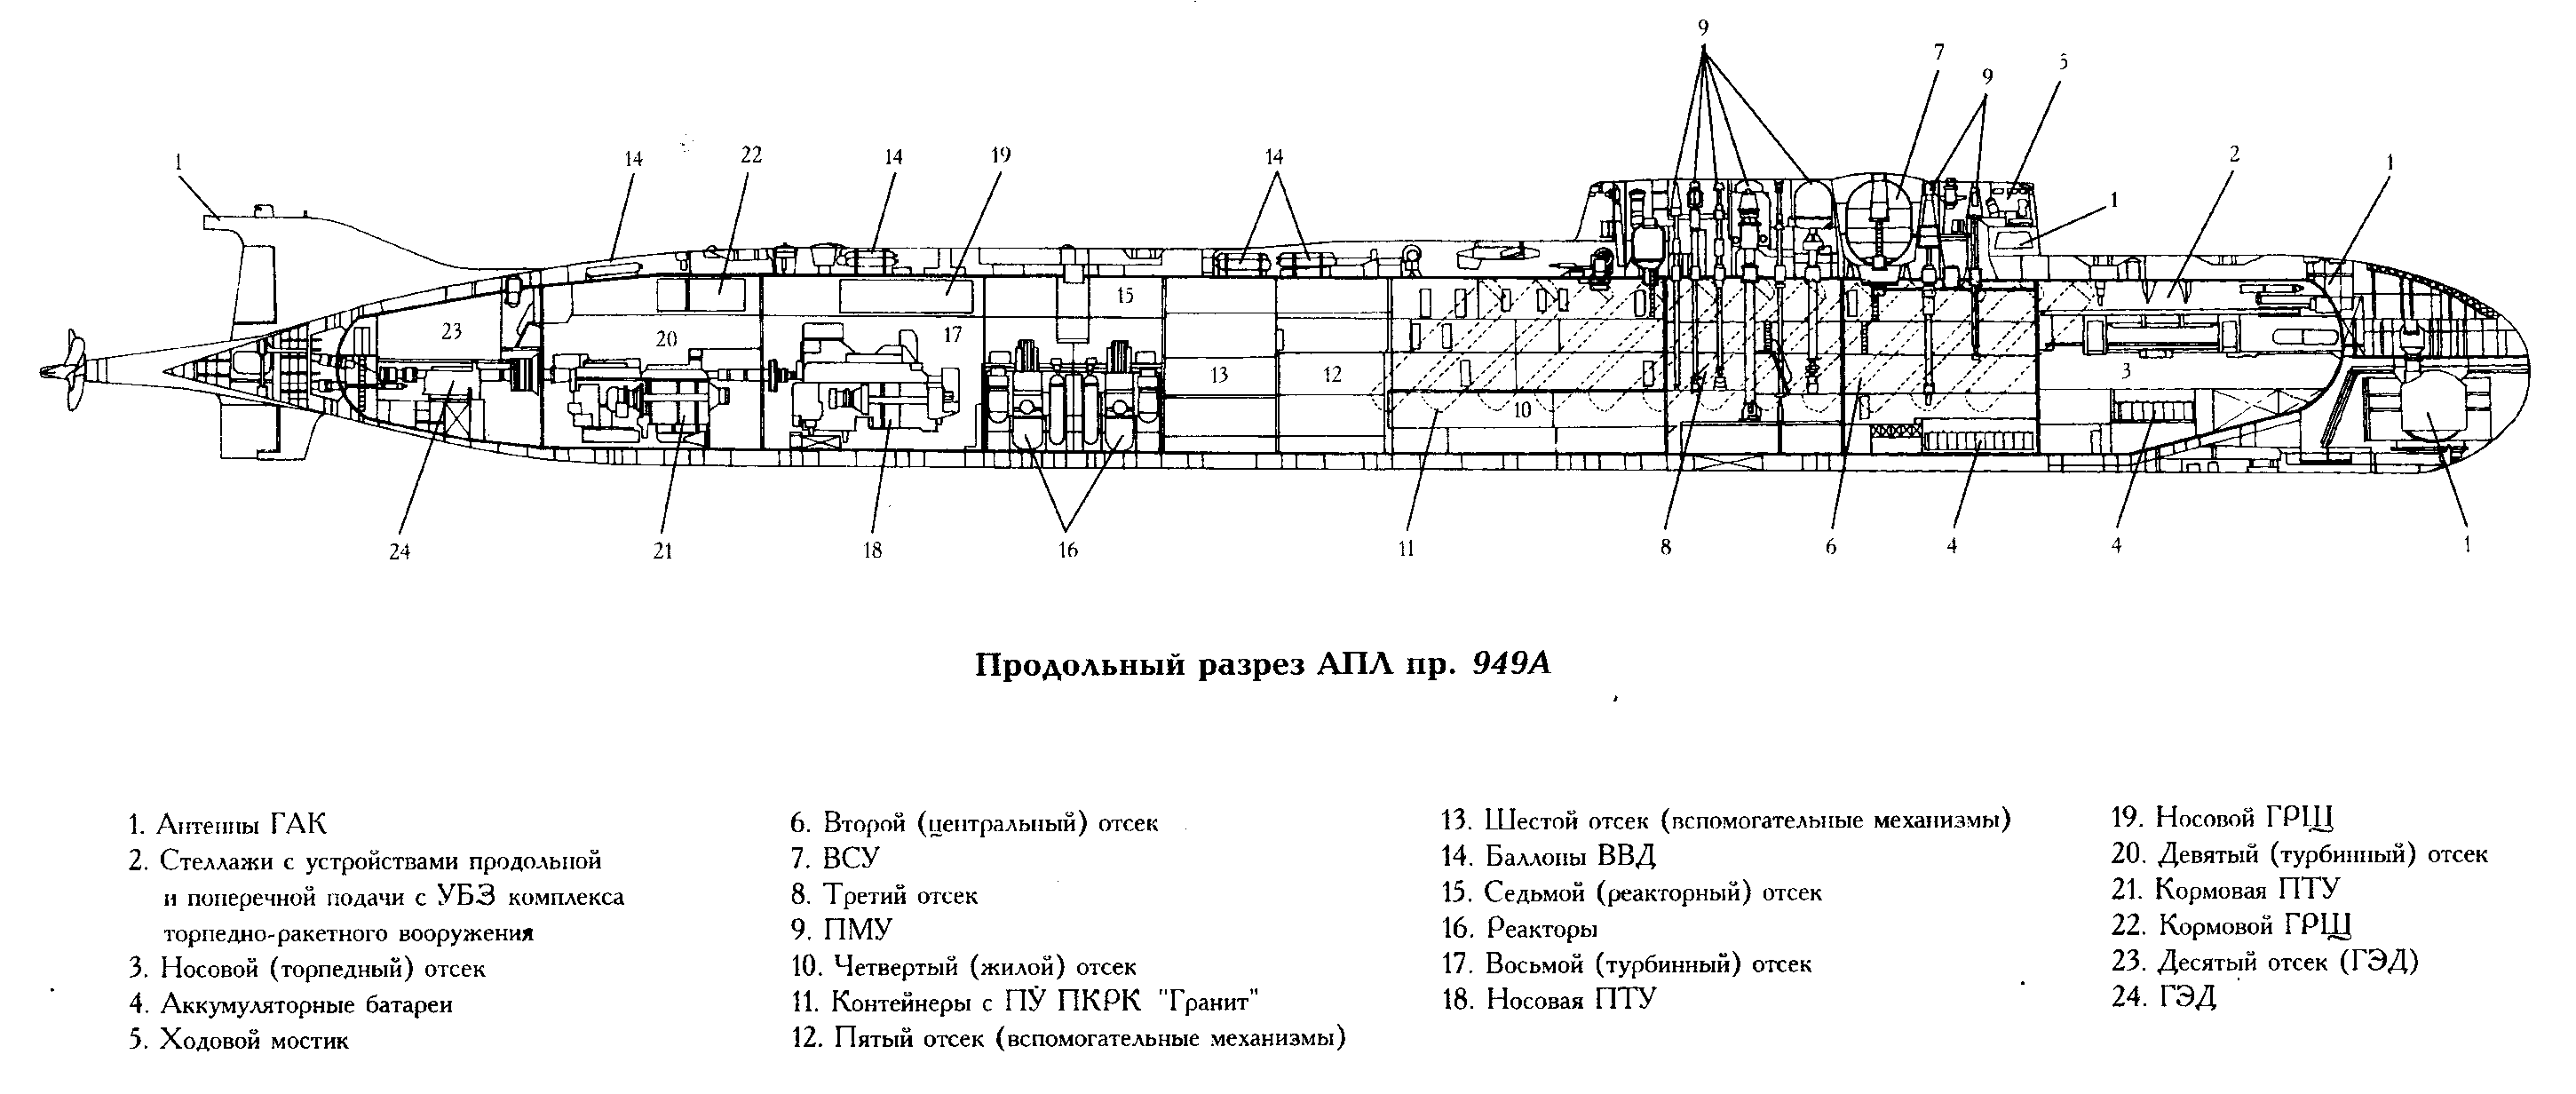 Российская подводная лодка (АПЛ) 